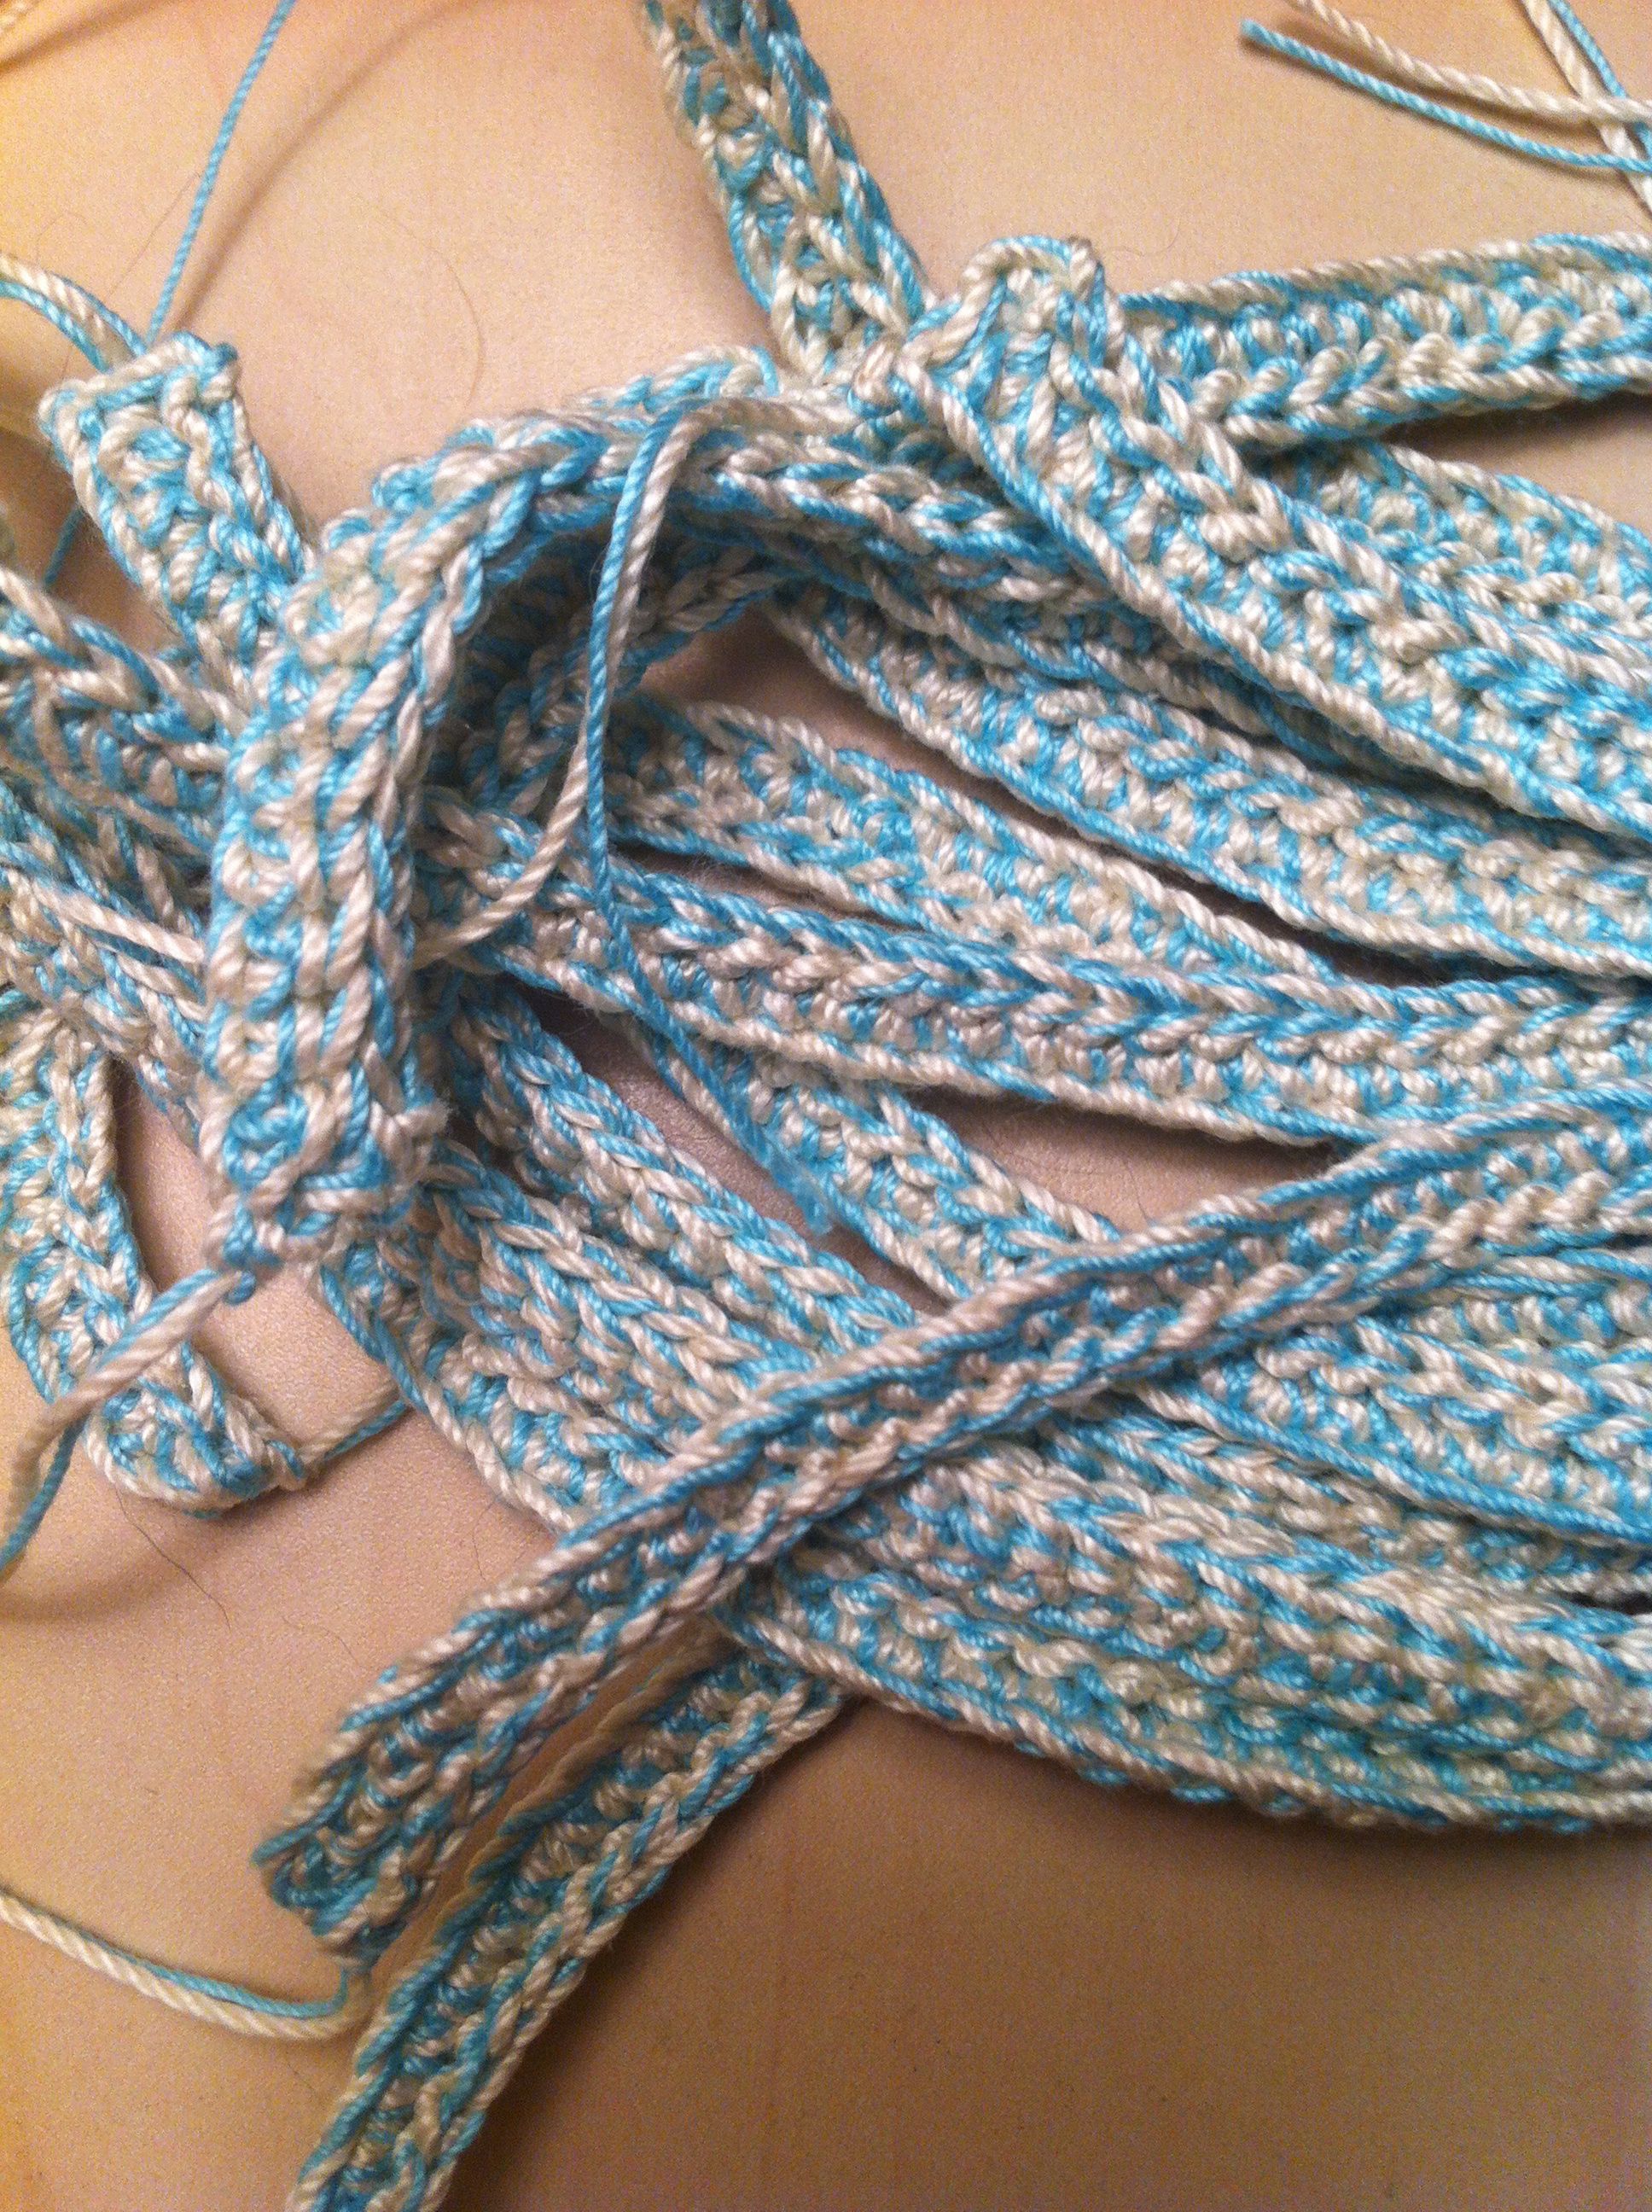 Friendship Bracelet Thread Crochet FREE Pattern